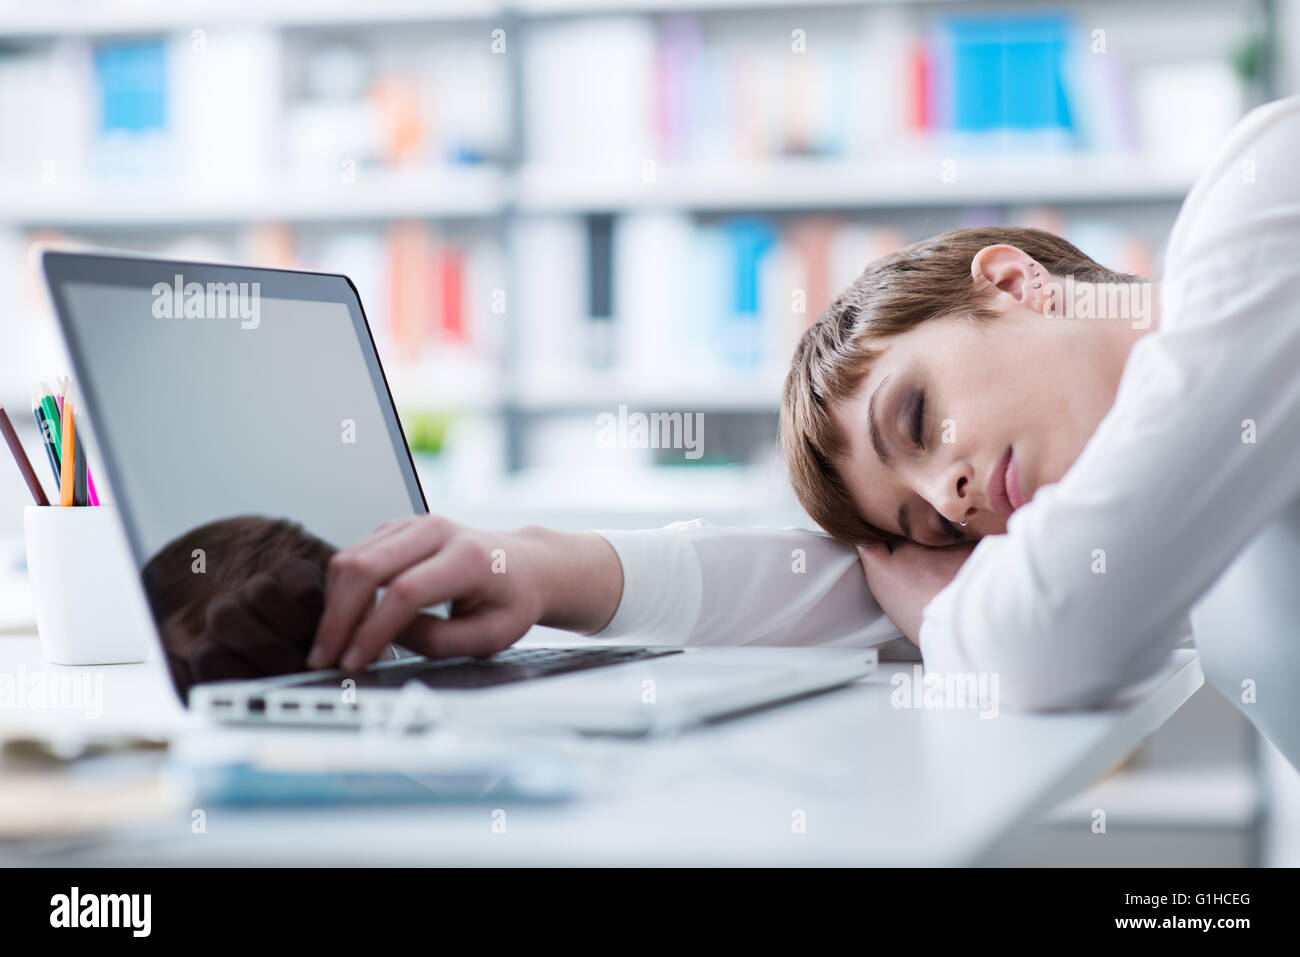 Two businesswomen dormir sur son bureau et s'appuyant sur son bras Banque D'Images